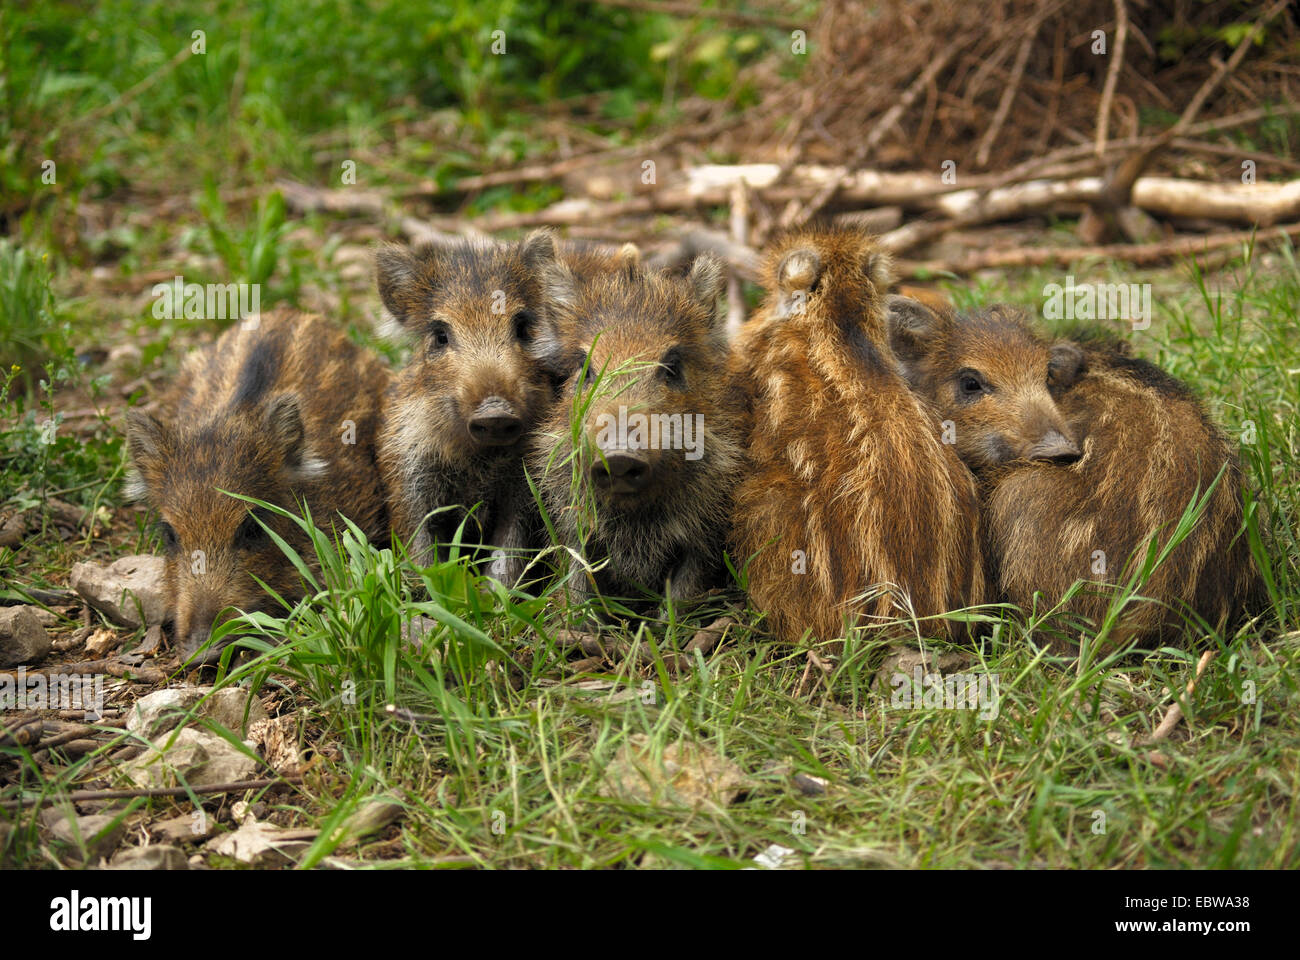 wild boar, pig, wild boar (Sus scrofa), piglets, Germany, Baden-Wuerttemberg Stock Photo